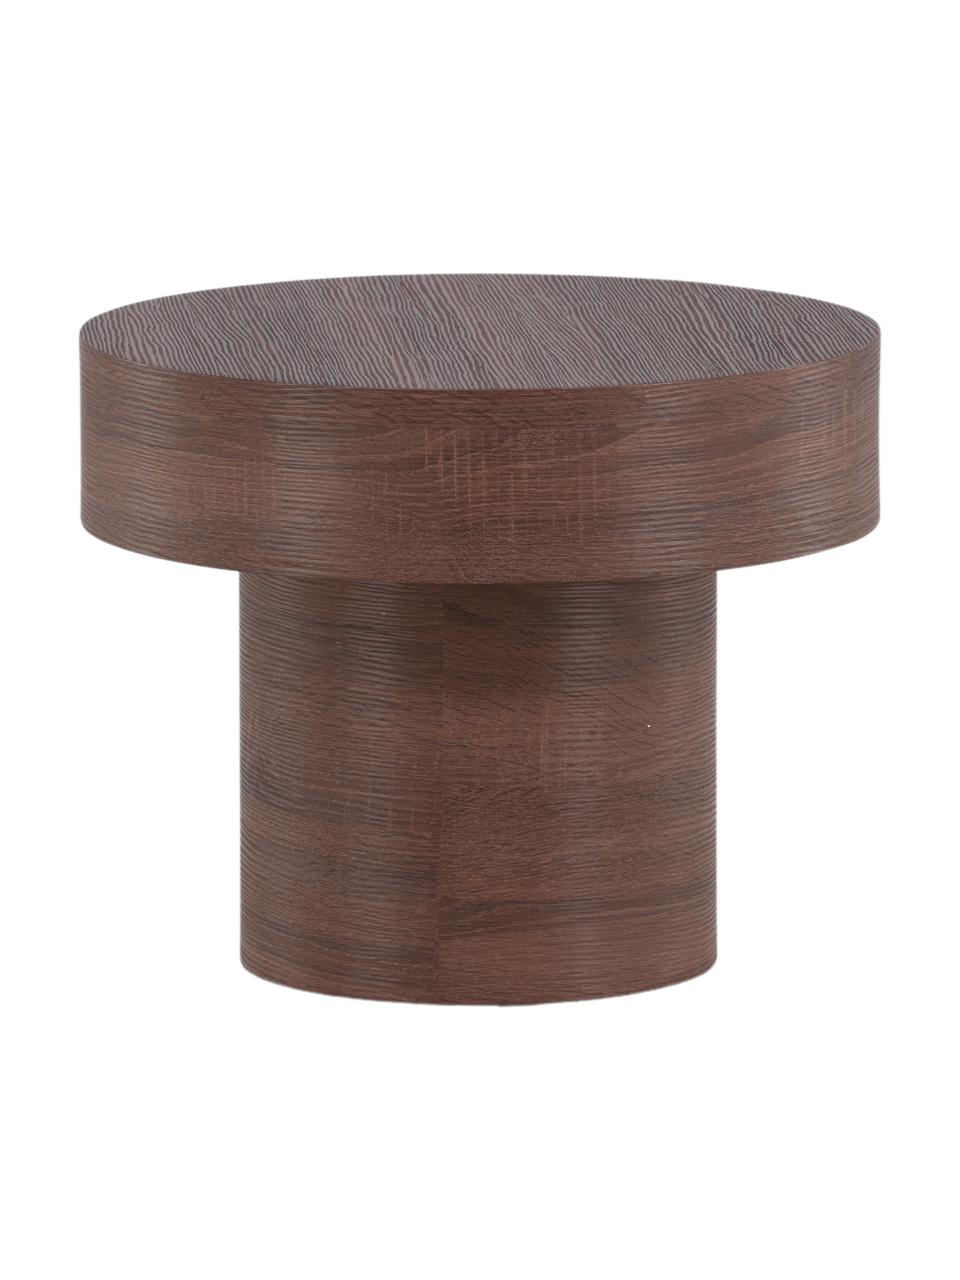 Table d'appoint ronde Malung, MDF (panneau en fibres de bois à densité moyenne) avec stratifié papier, Bois, brun foncé laminé, Ø 50 x haut. 40 cm